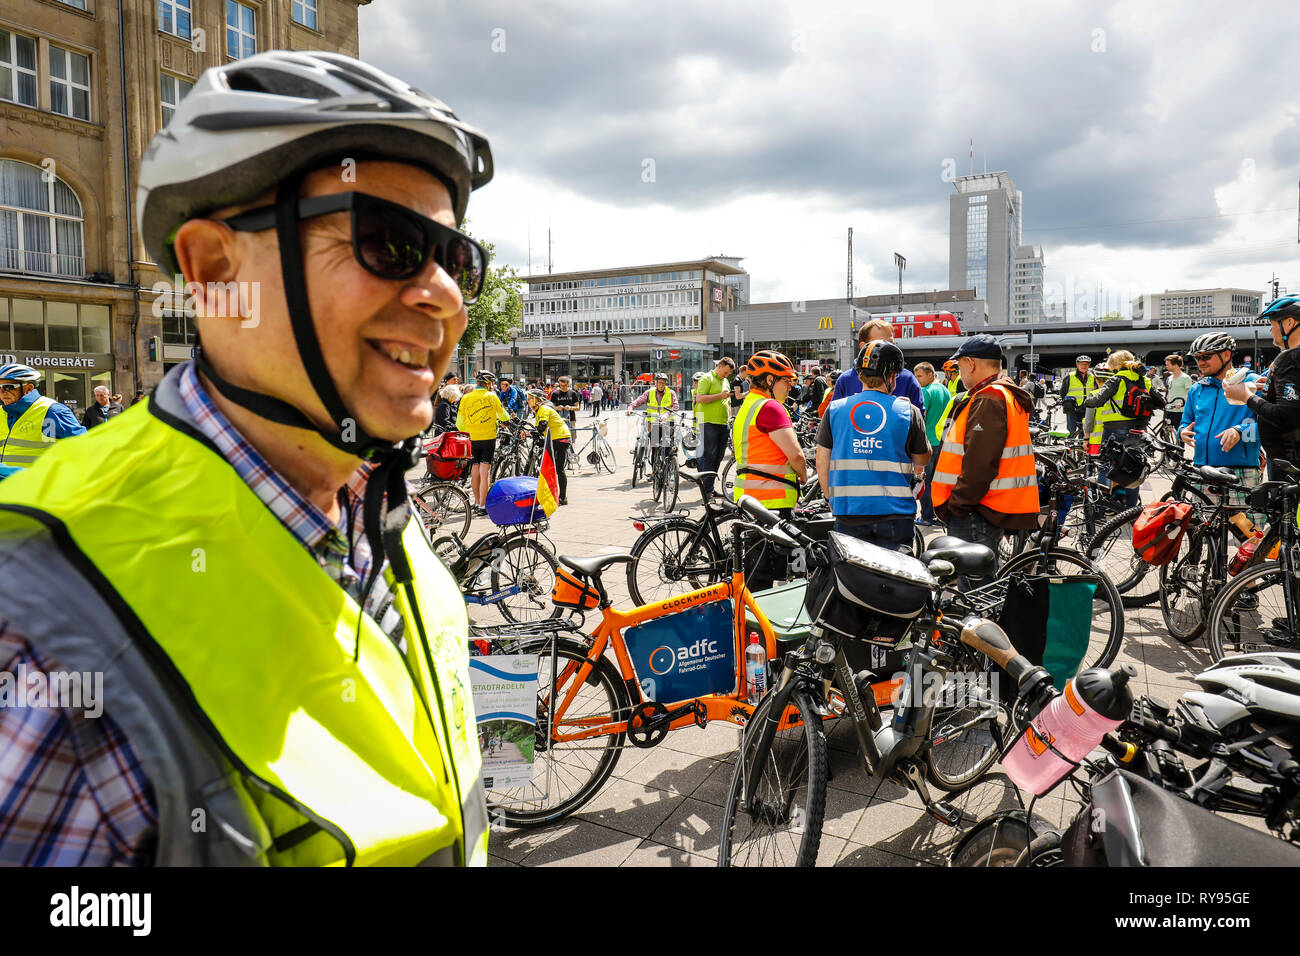 Essen, Ruhrgebiet, Nordrhein-Westfalen, Deutschland - Stadt Radfahren, Radfahren für ein gutes Klima, ein Ereignis, eine Kampagne des Klima-bündnis, hier der Start Stockfoto